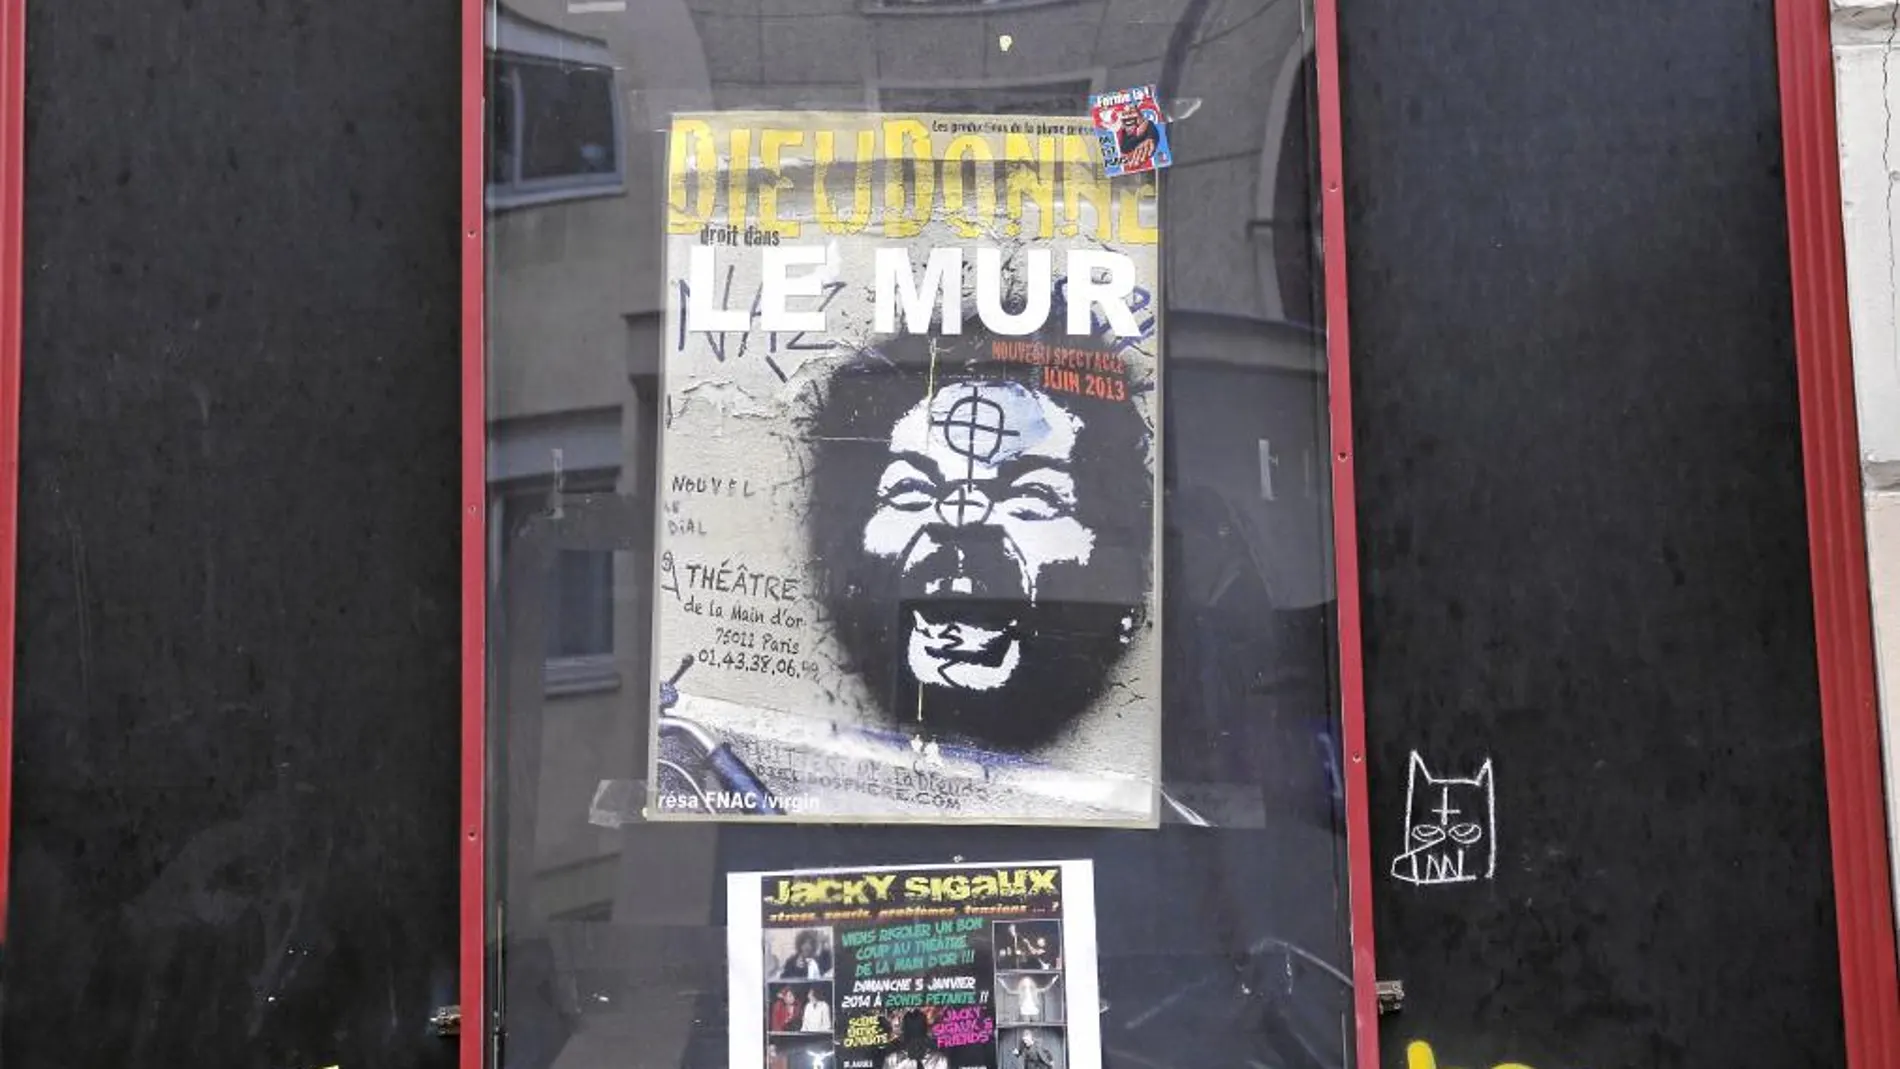 «Le Mur» El cartel de Dieudonné en el Teatro de la Main d'Or en París, donde programan su función